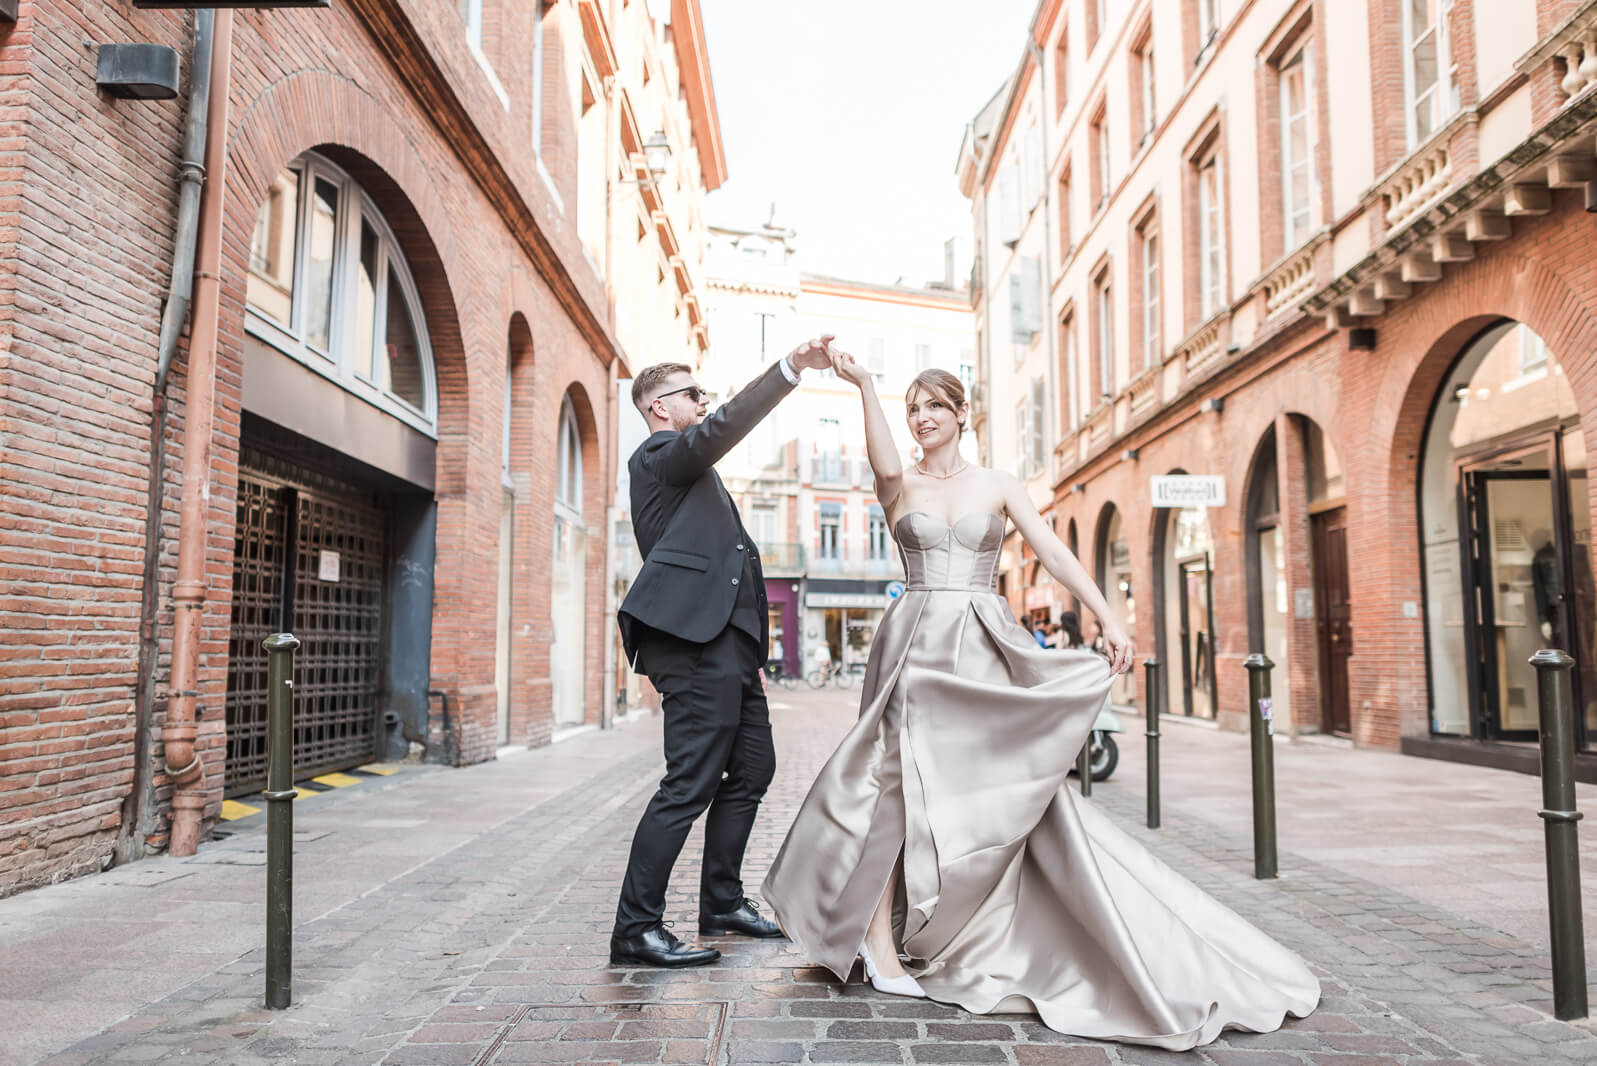 Photographe de mariage à Toulouse, les mariés dans les rues de Toulouse